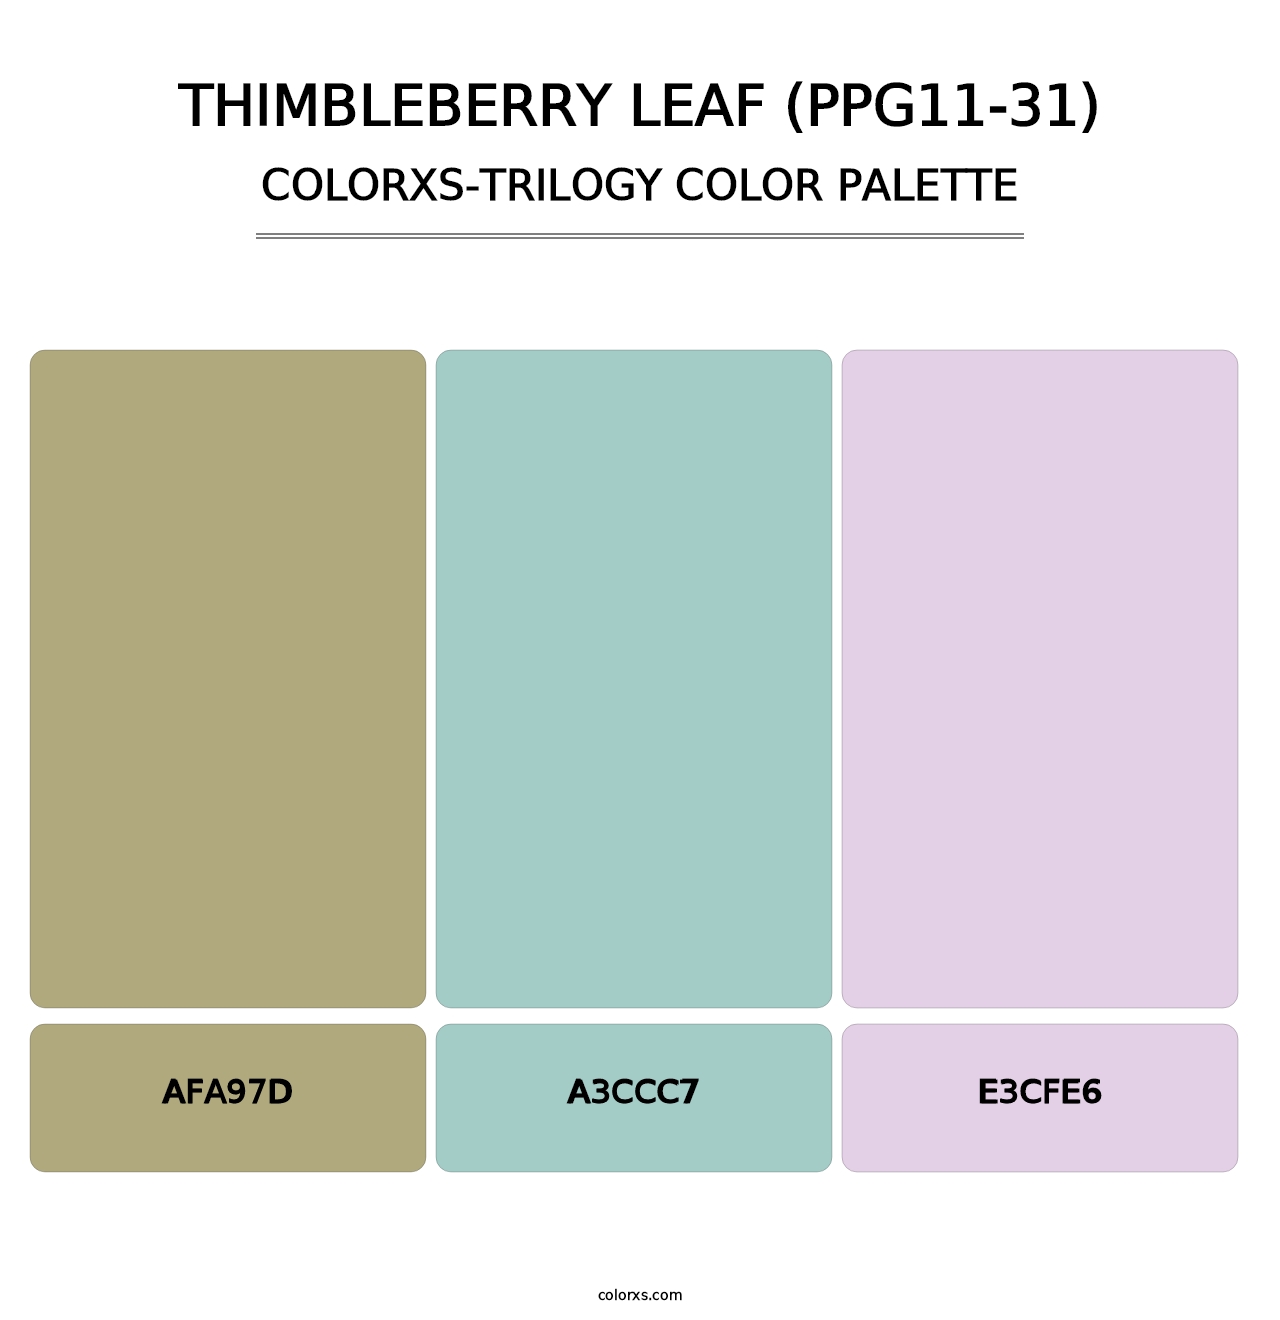 Thimbleberry Leaf (PPG11-31) - Colorxs Trilogy Palette